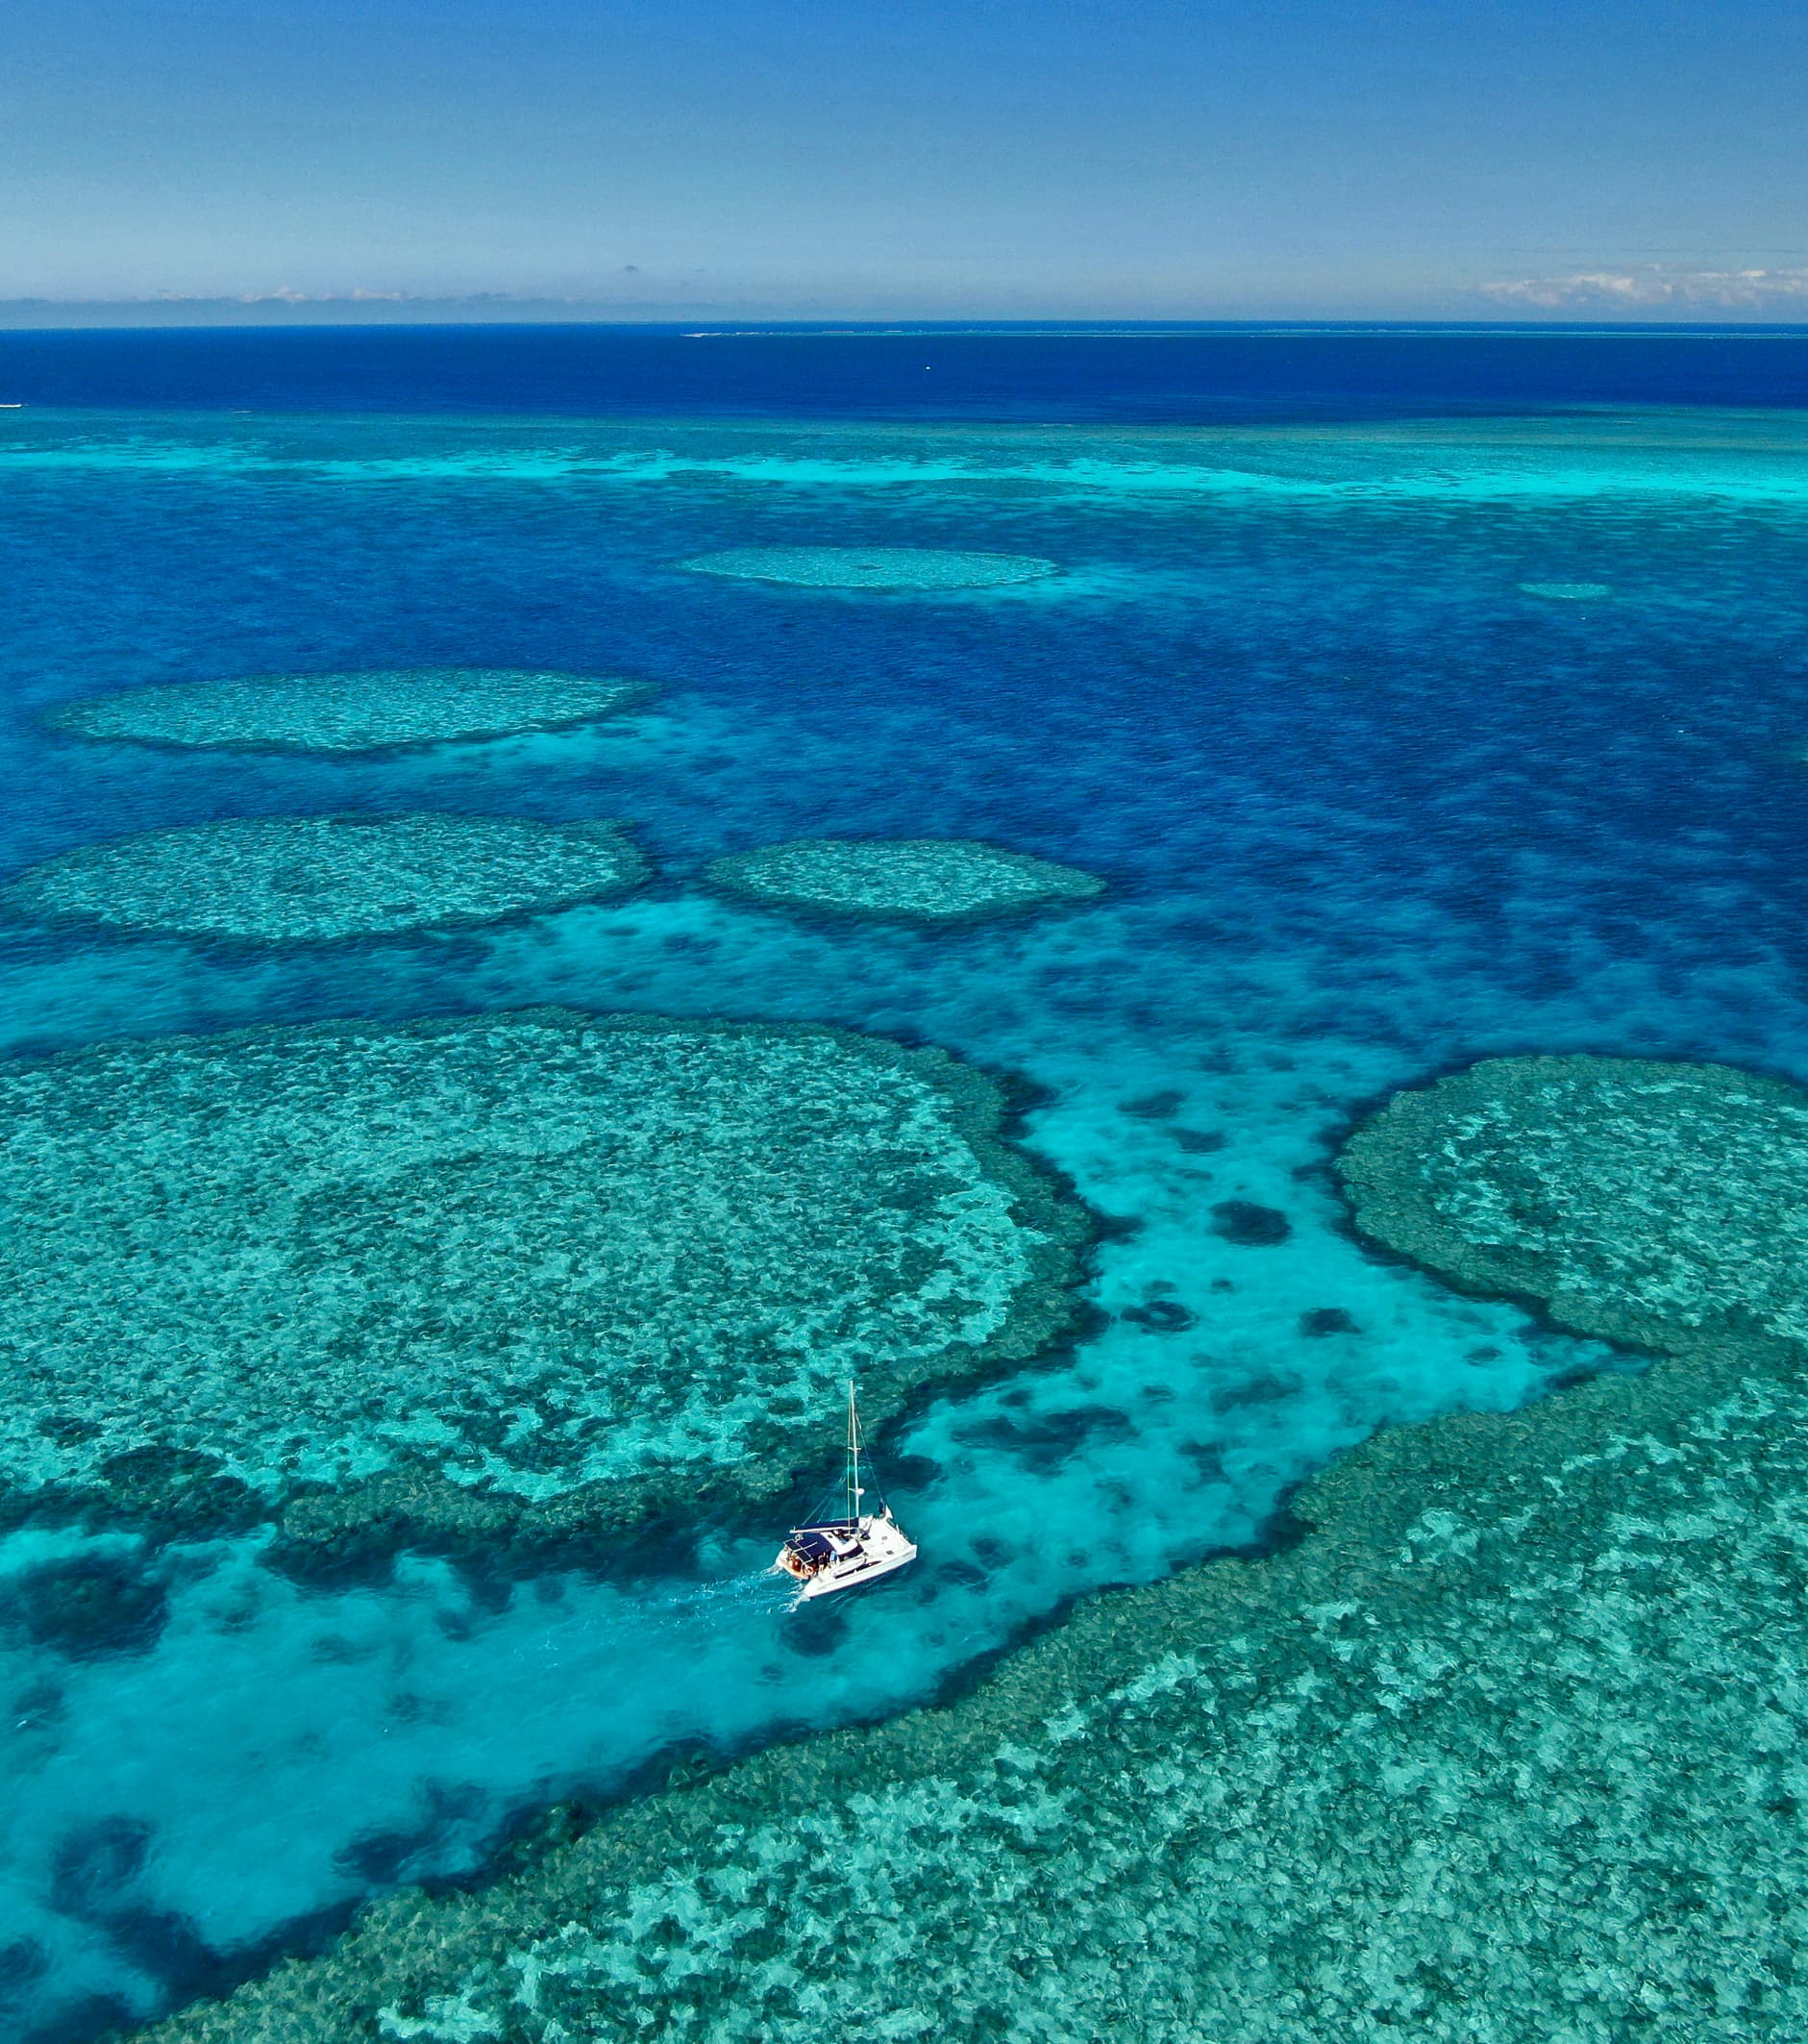 Queenslands Great Barrier Reef